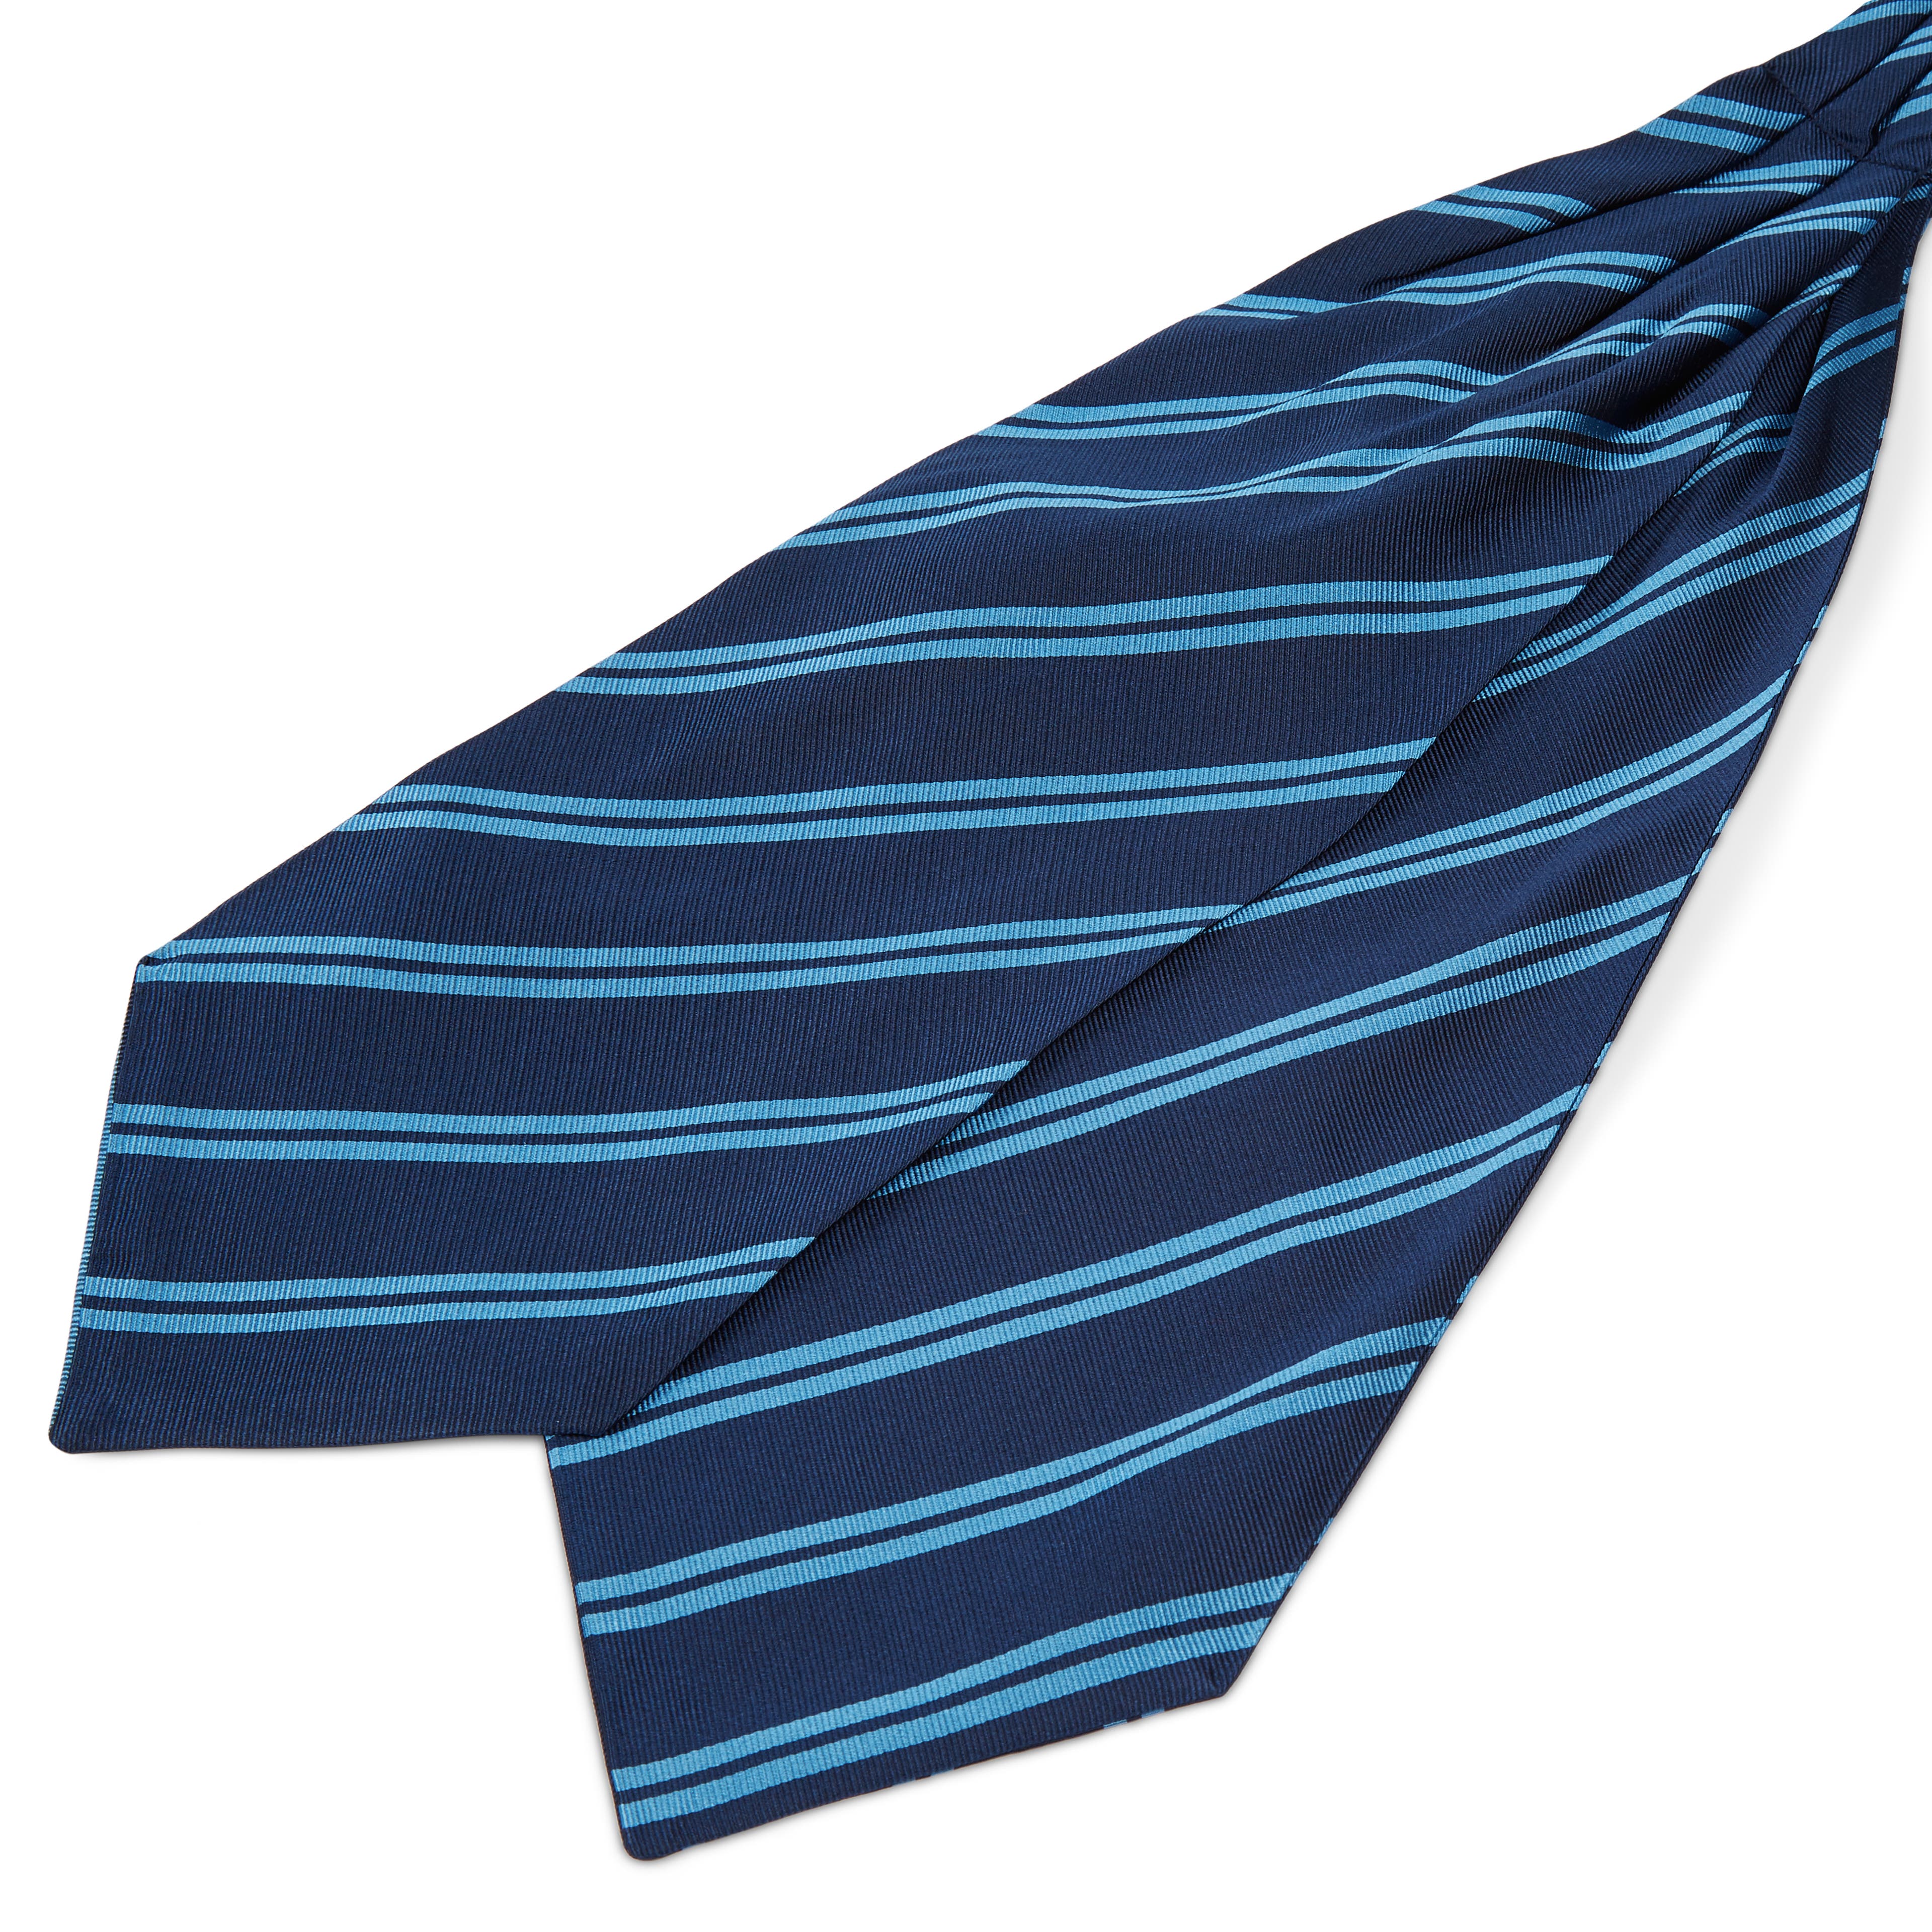 Cravate Ascot en soie bleu marine à rayures parallèles